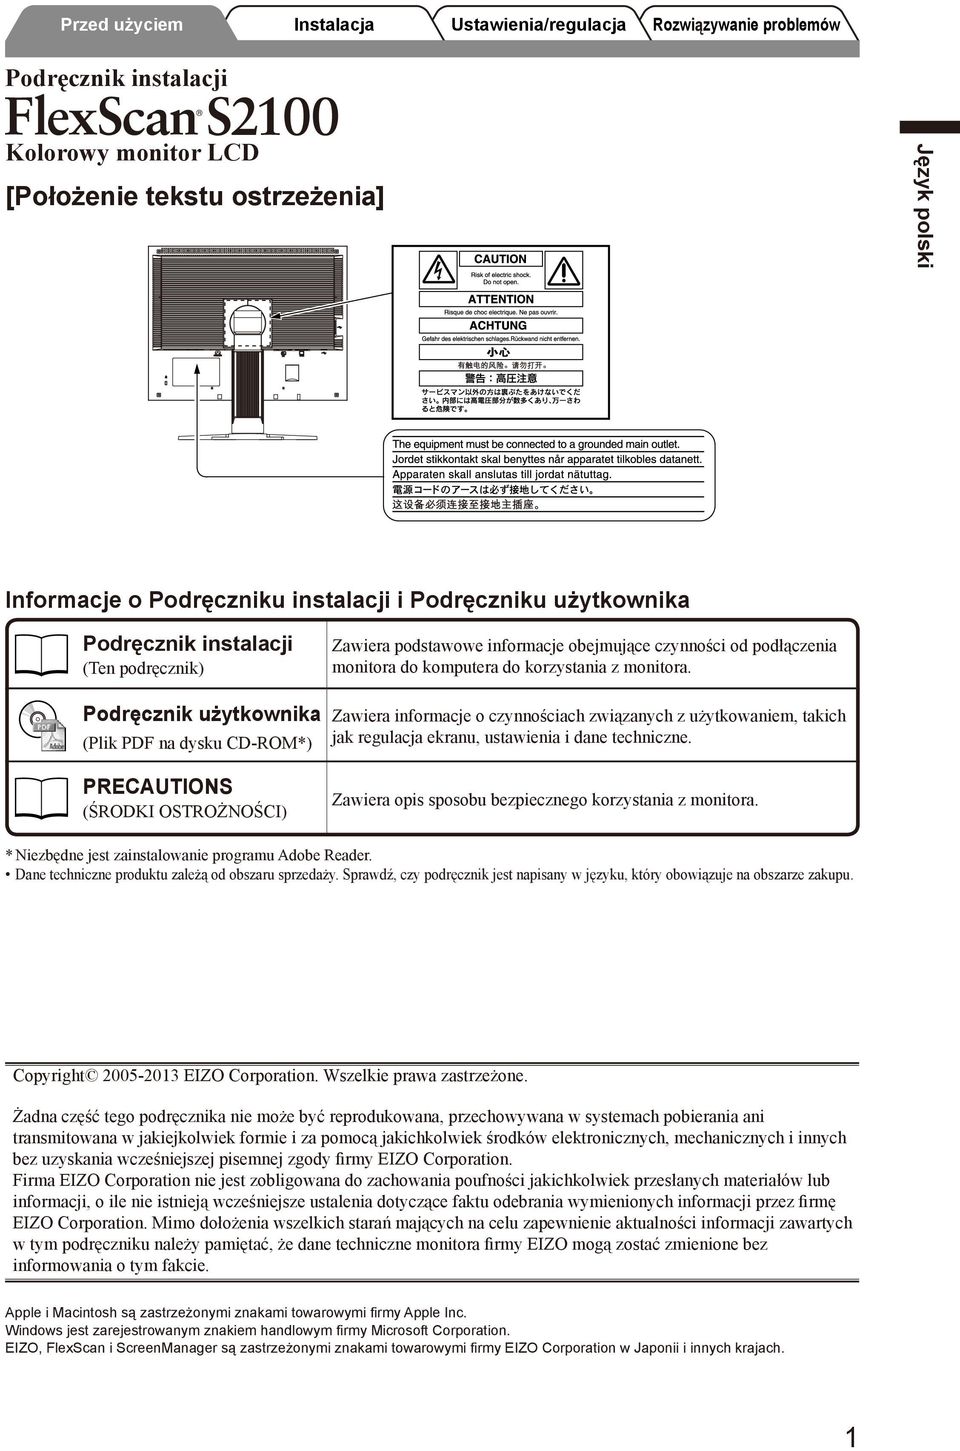 Podręcznik użytkownika (Plik PDF na dysku CD-ROM*) Zawiera informacje o czynnościach związanych z użytkowaniem, takich jak regulacja ekranu, ustawienia i dane techniczne.